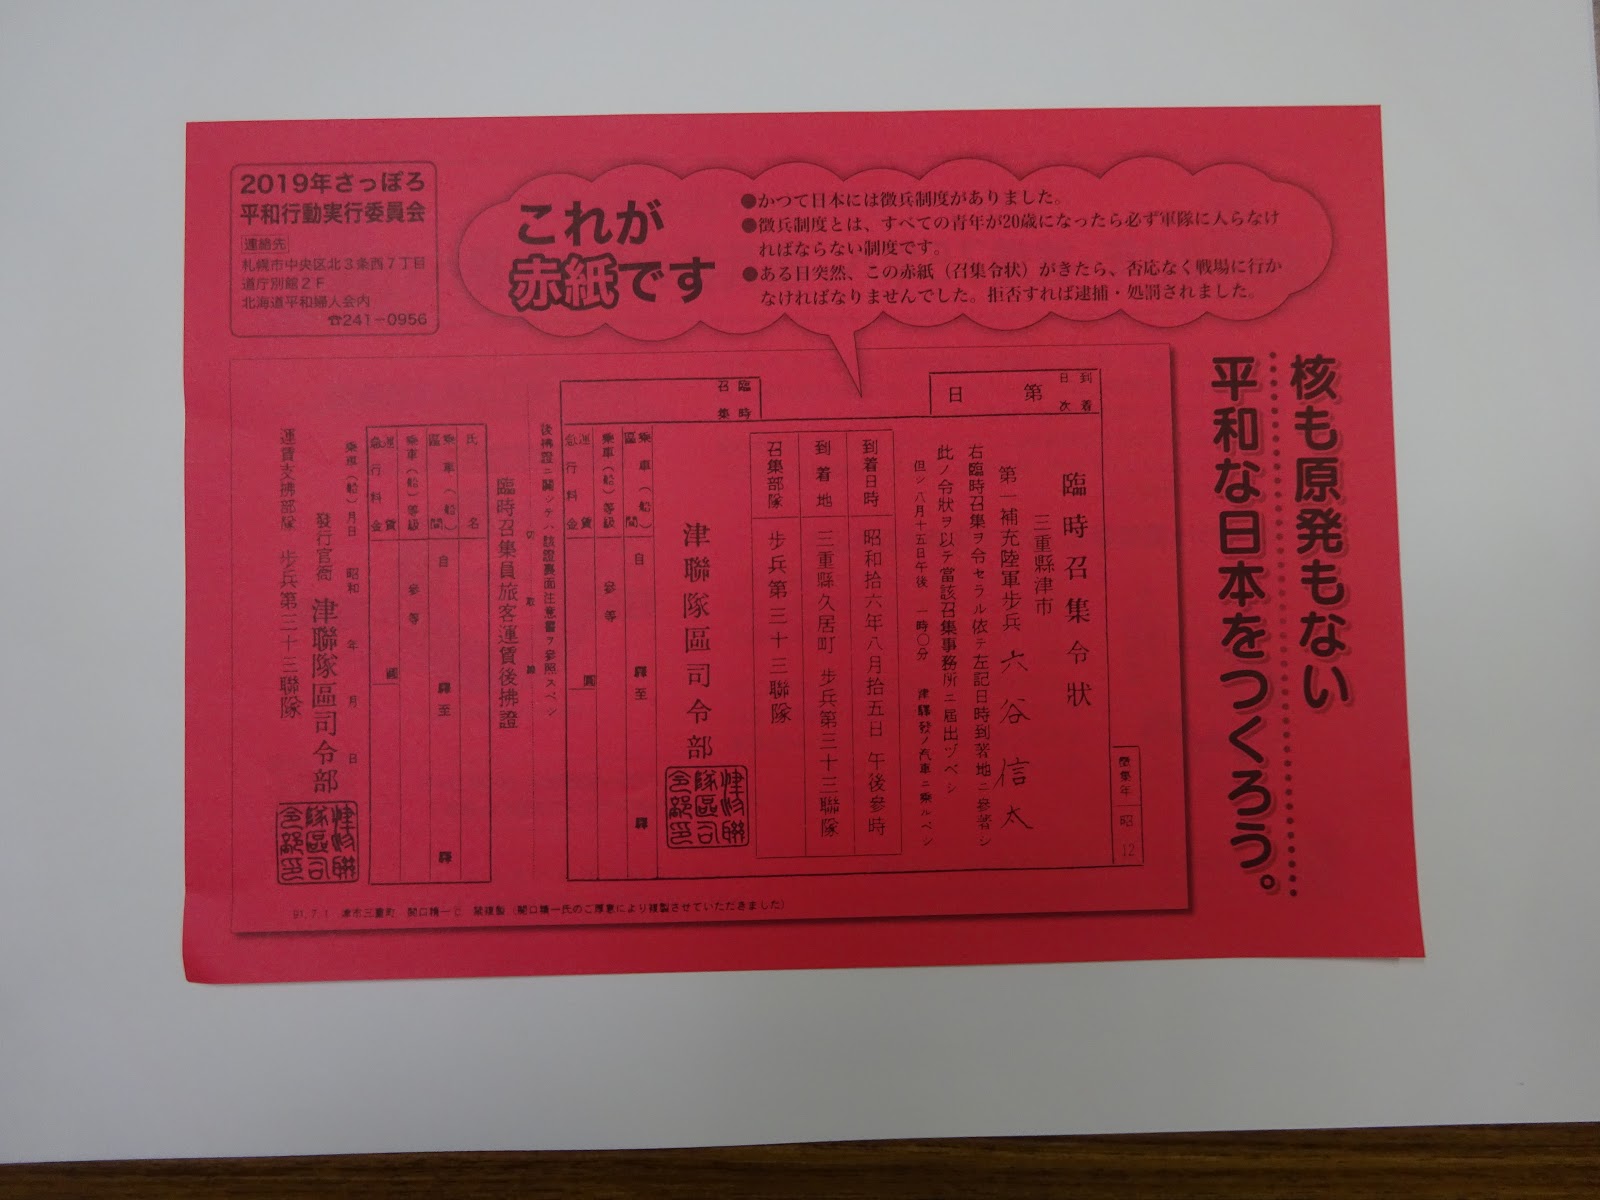 日本中国友好協会札幌支部 さっぽろ平和行動 赤紙 召集令状 を千枚配布 協会から３人が参加